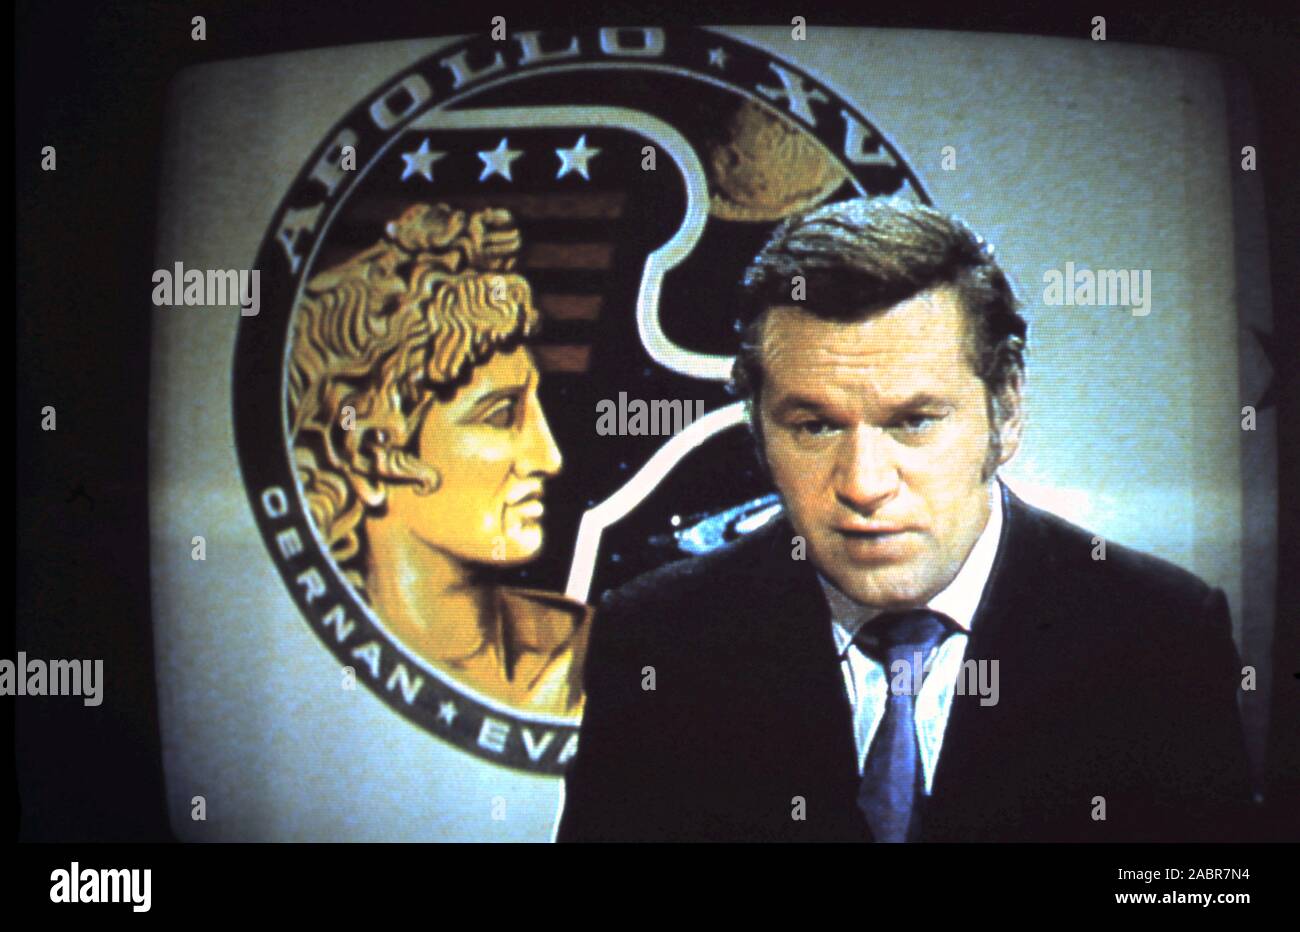 - Teleclip 'Reggie' Bosanquet British broadcaster pour ITN présentant l'alunissage d'Apollo 17 - close-up photographie prise directement à partir de la télévision couleur écran durant l'émission en direct au Royaume-Uni - 1972 Banque D'Images